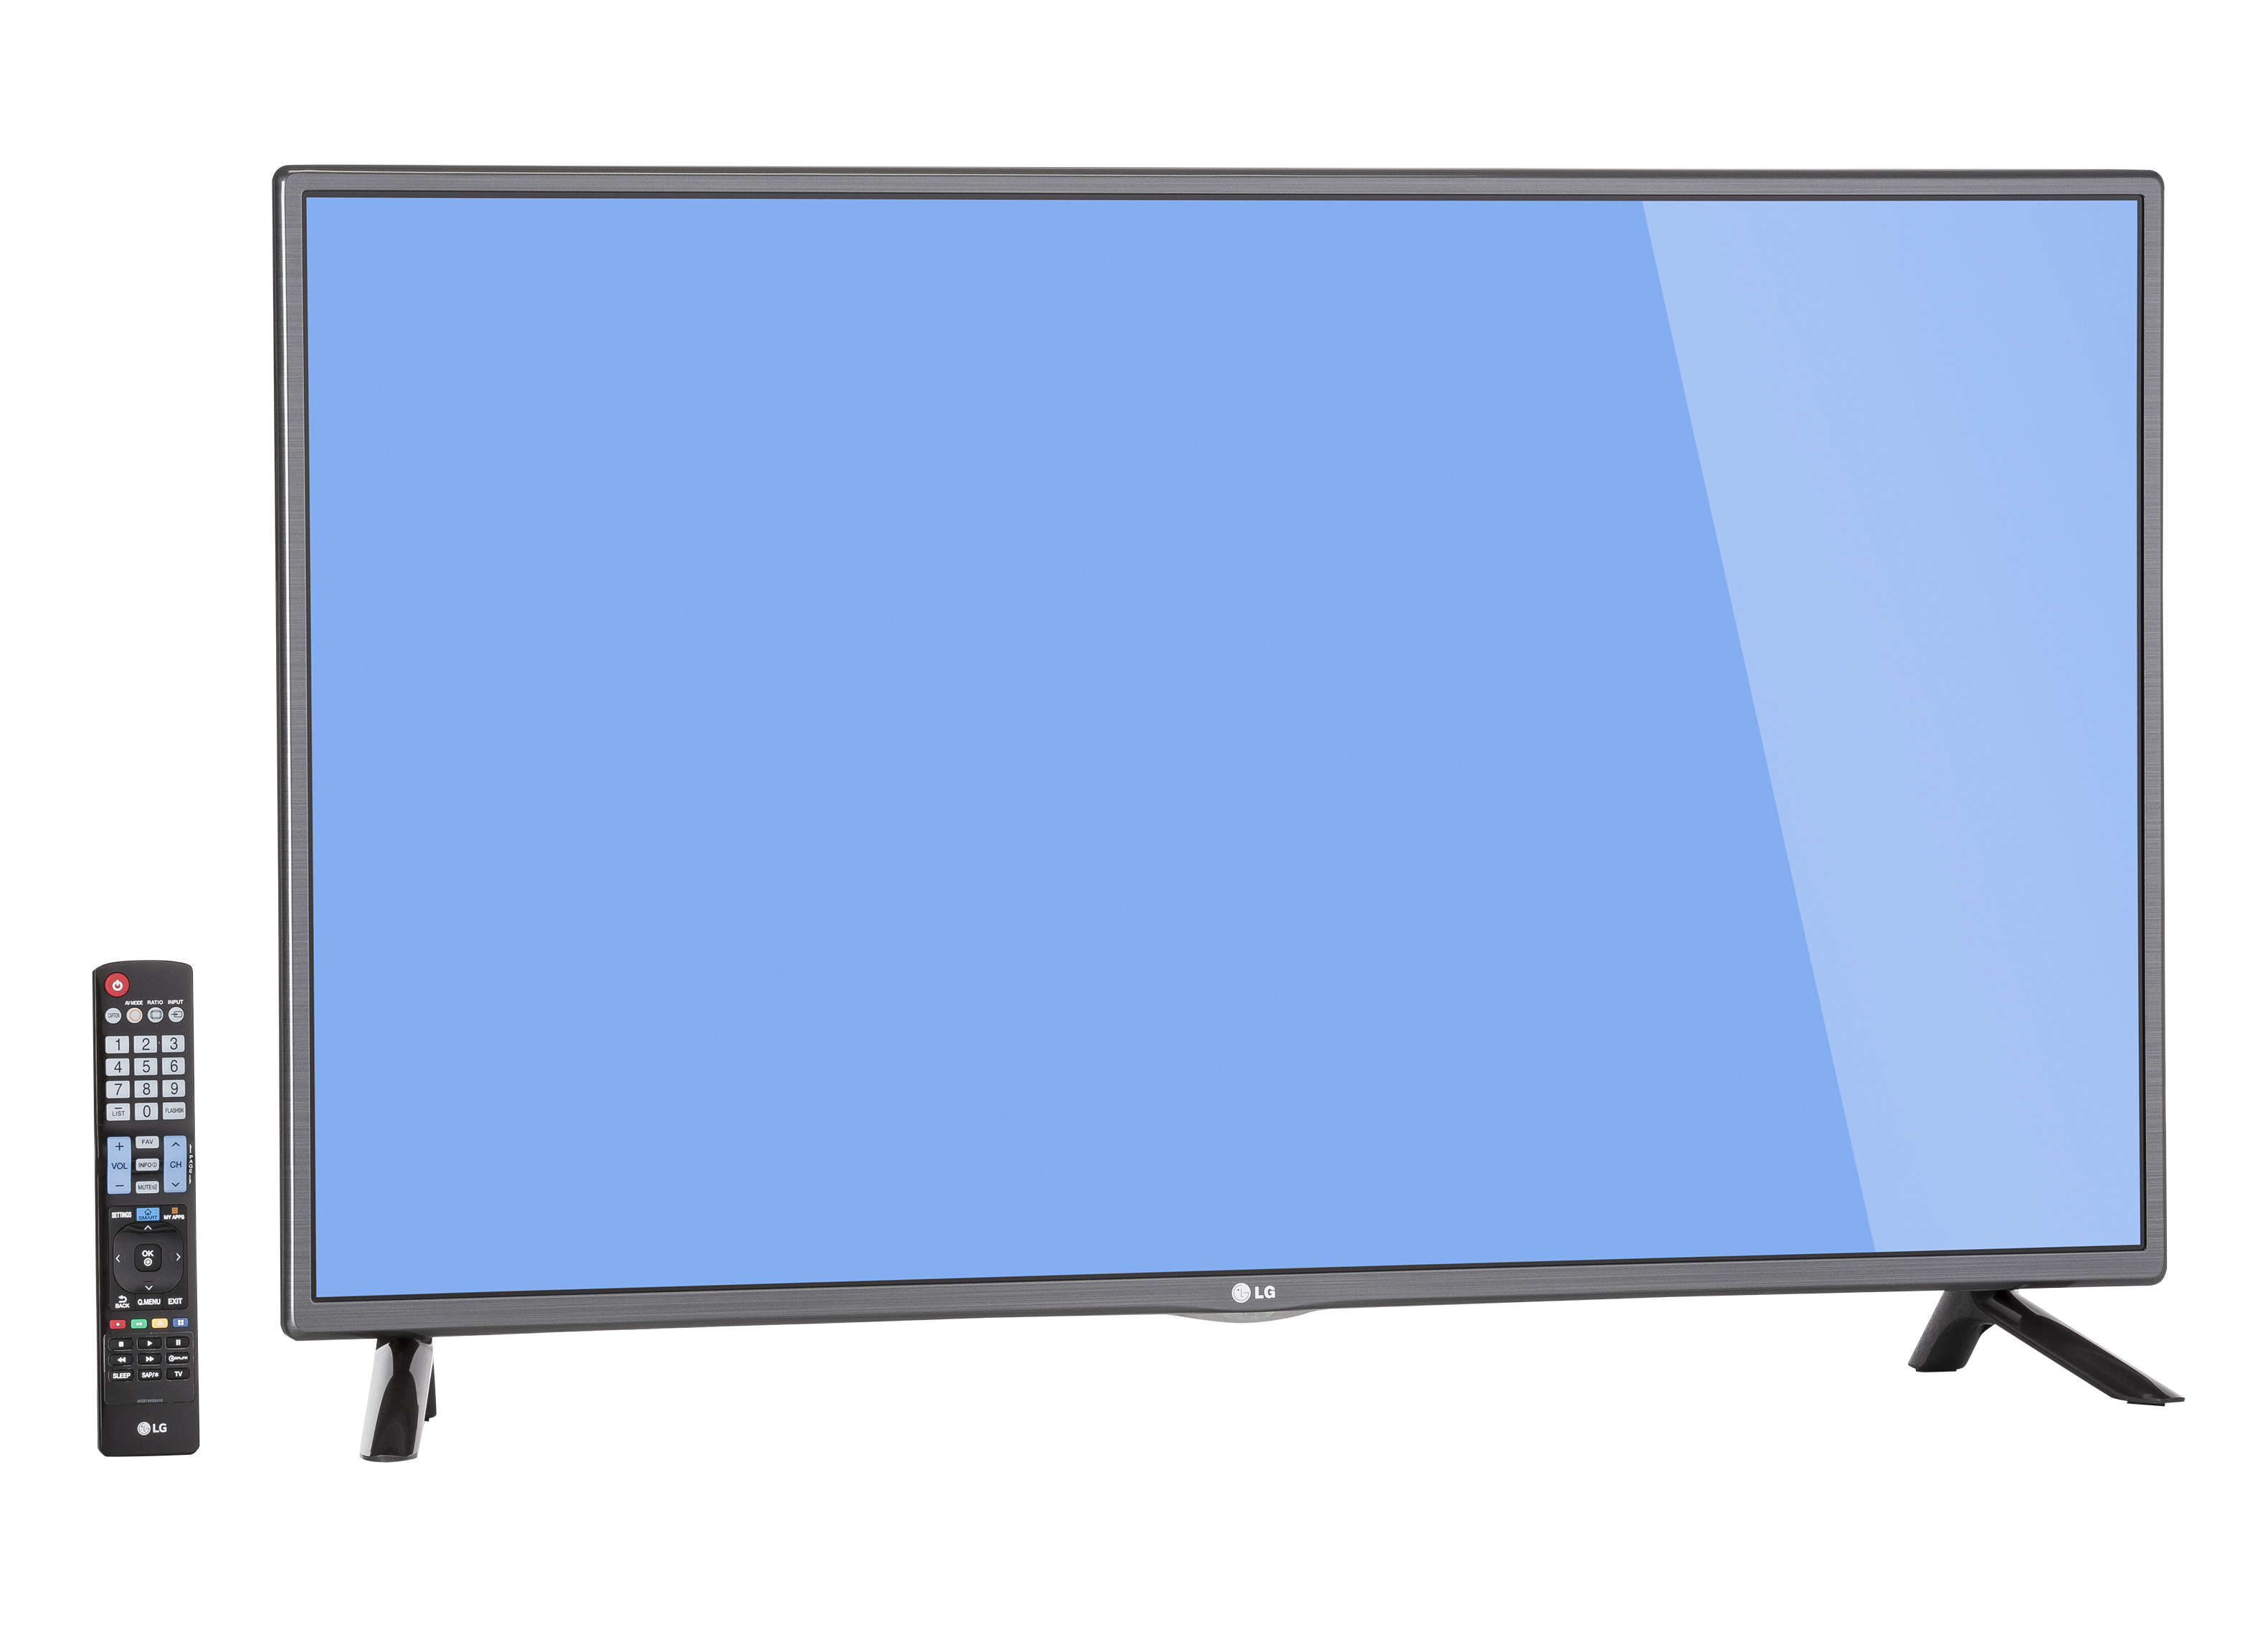 LG Smart LED TV - 42'' Class (41.9'' Diag) (42LF5800)